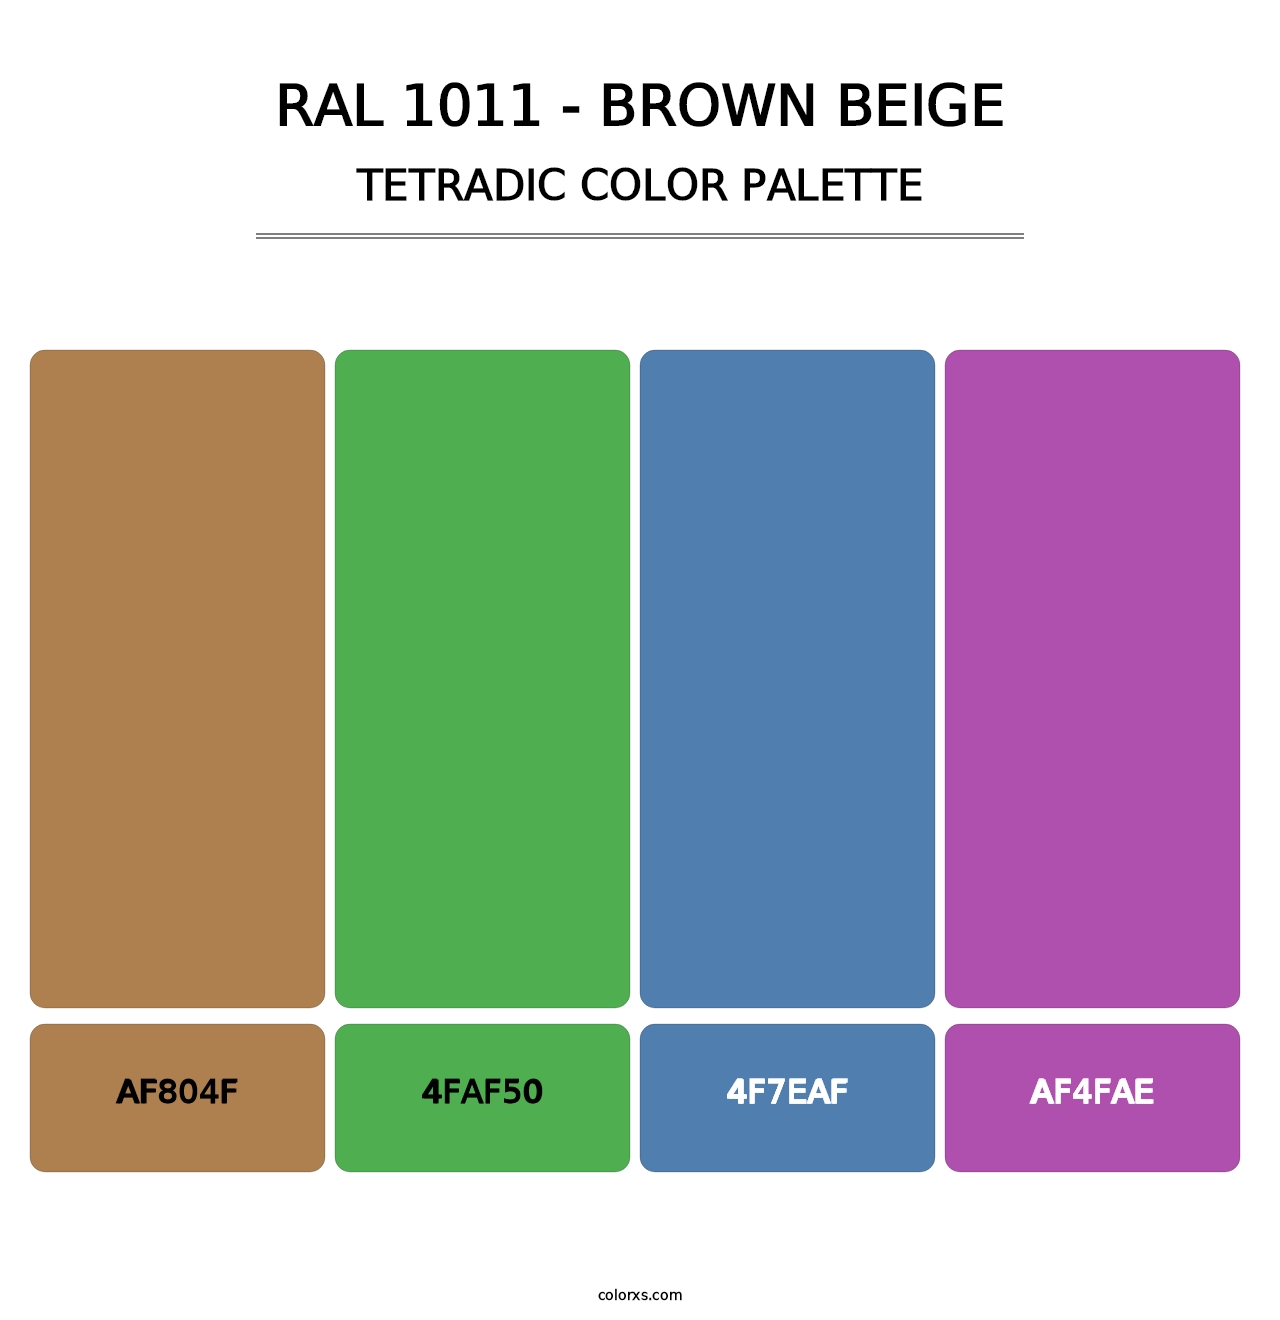 RAL 1011 - Brown Beige - Tetradic Color Palette